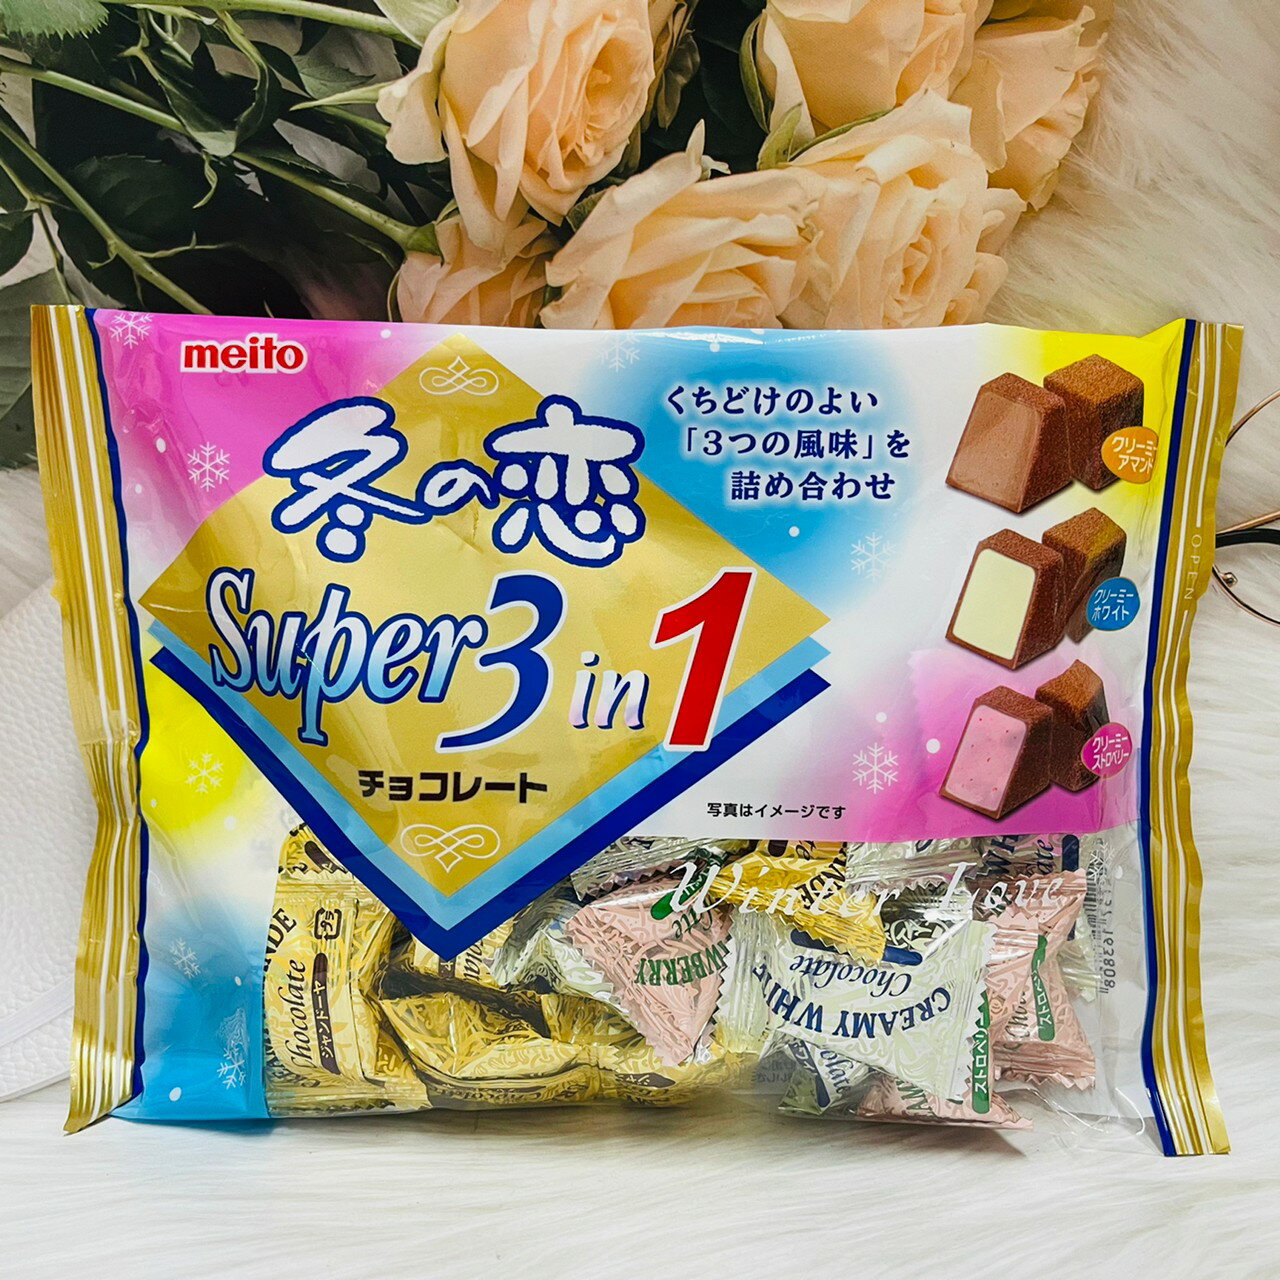 日本 meito 名糖 冬之戀 Super 超級3合1 巧克力 161g 3種風味一次滿足～可可粉巧克力/白巧克力/草莓風味巧克力｜全店$199免運